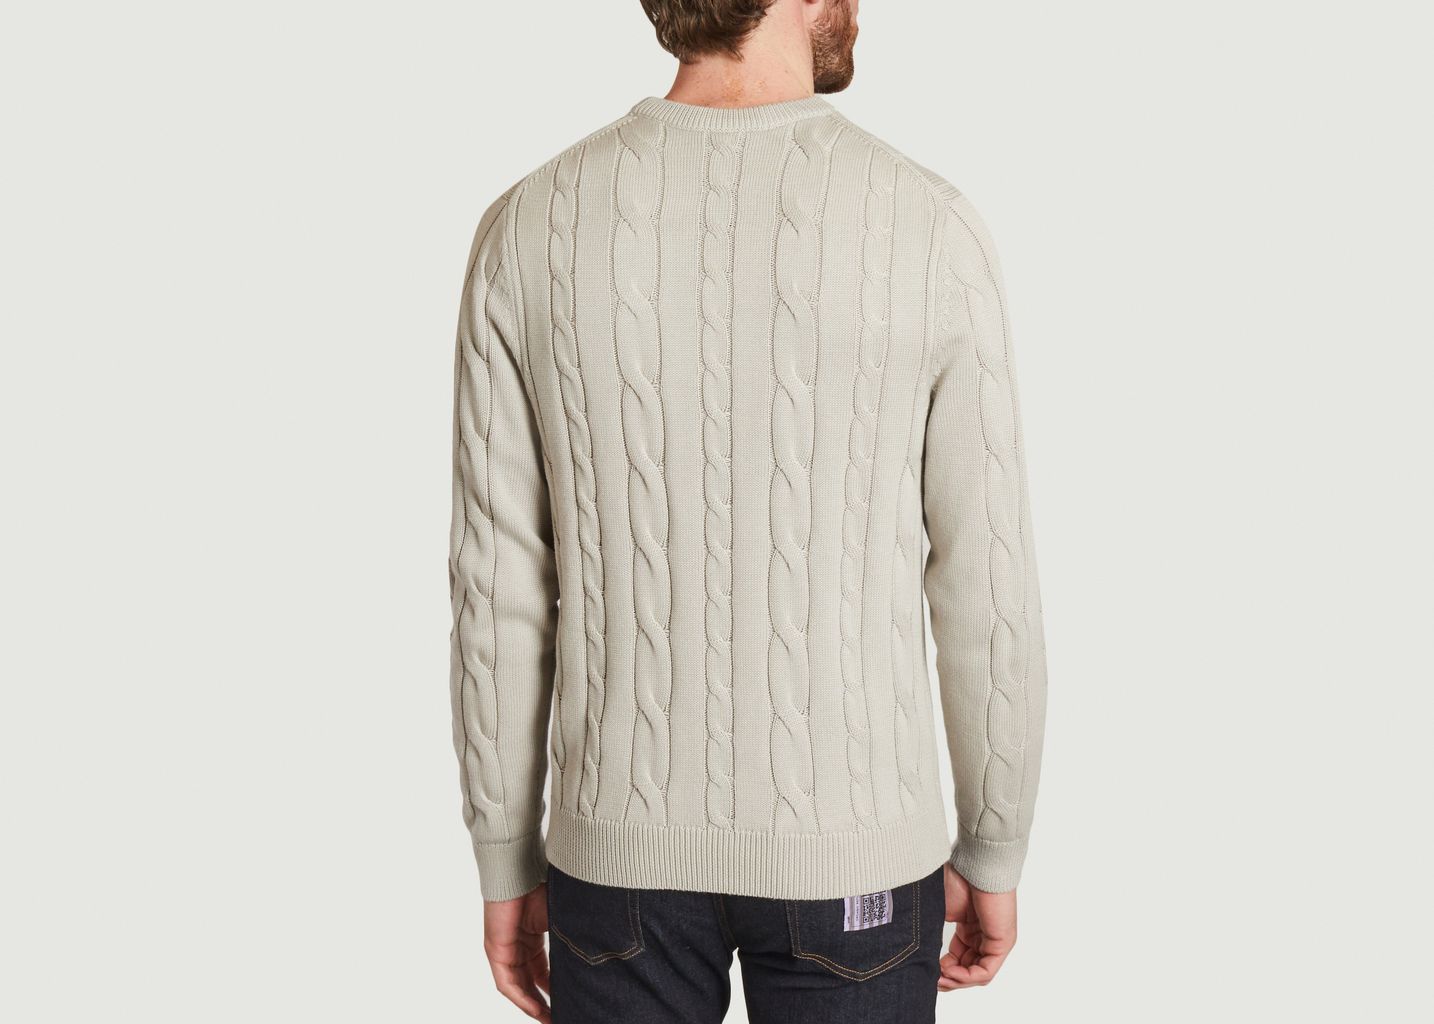 Broad Stripe Zebra Knitwear Sweater - PS by PAUL SMITH